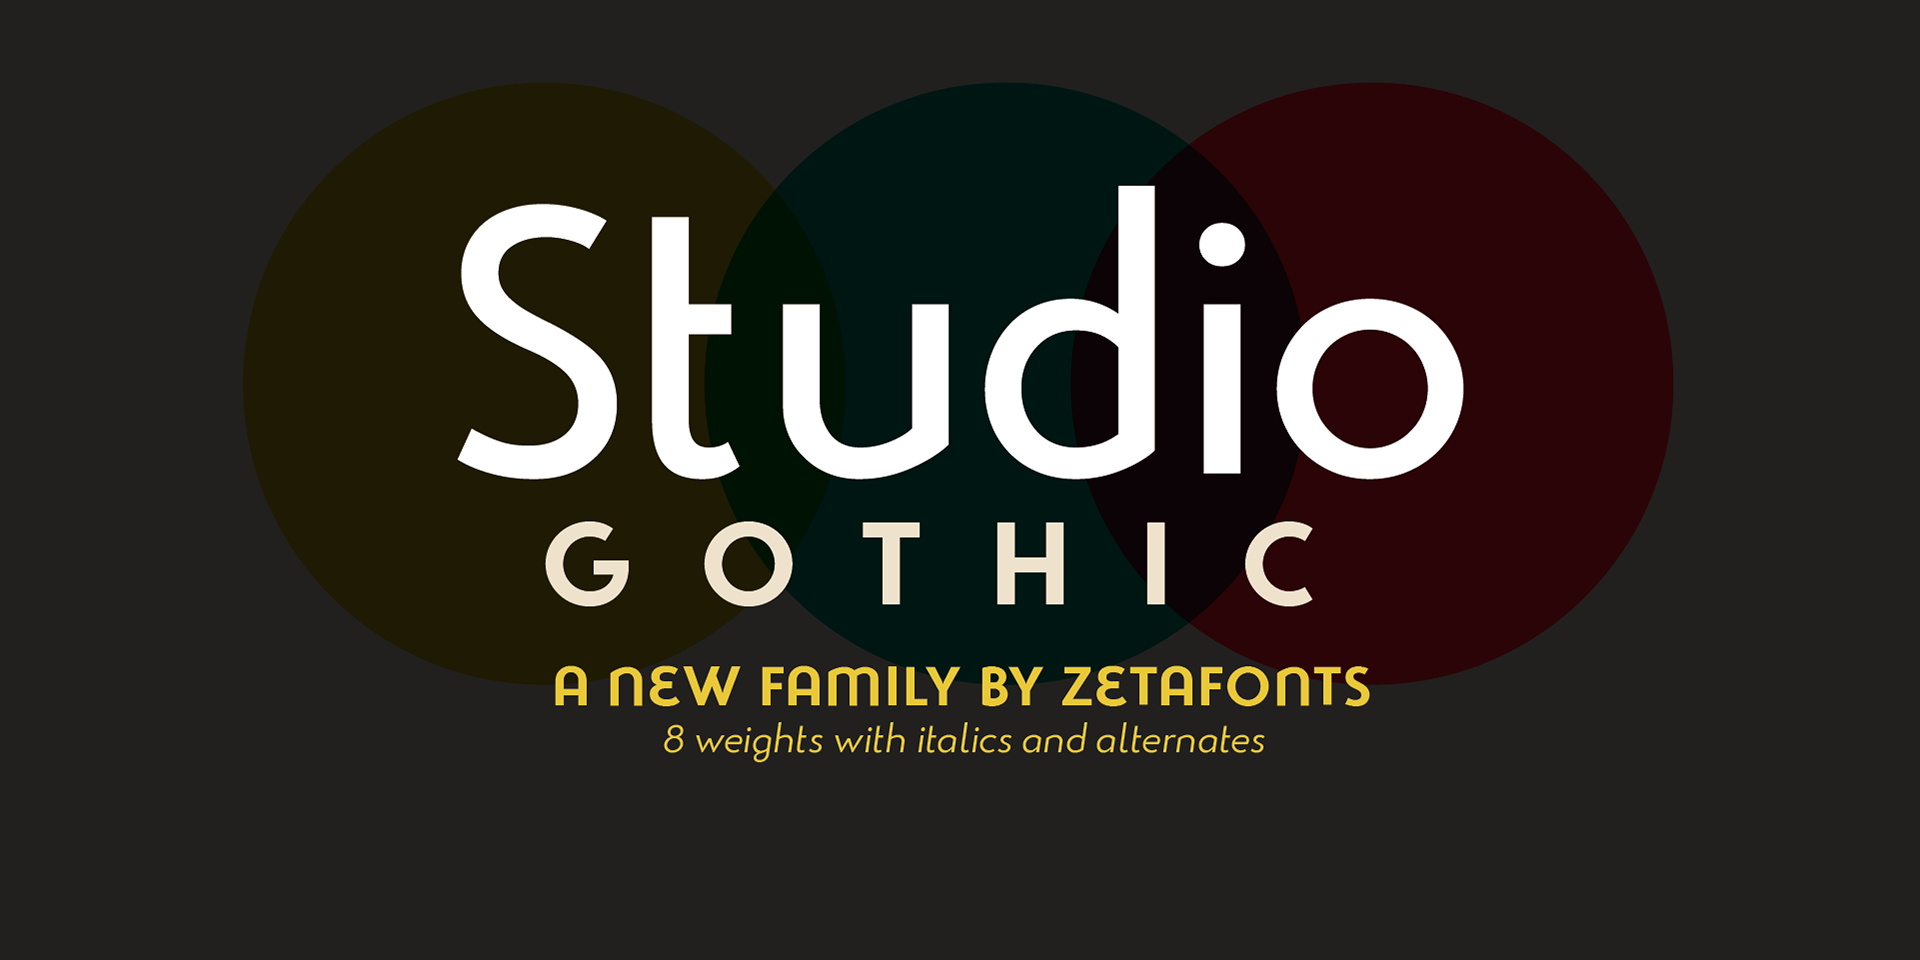 Police Studio Gothic